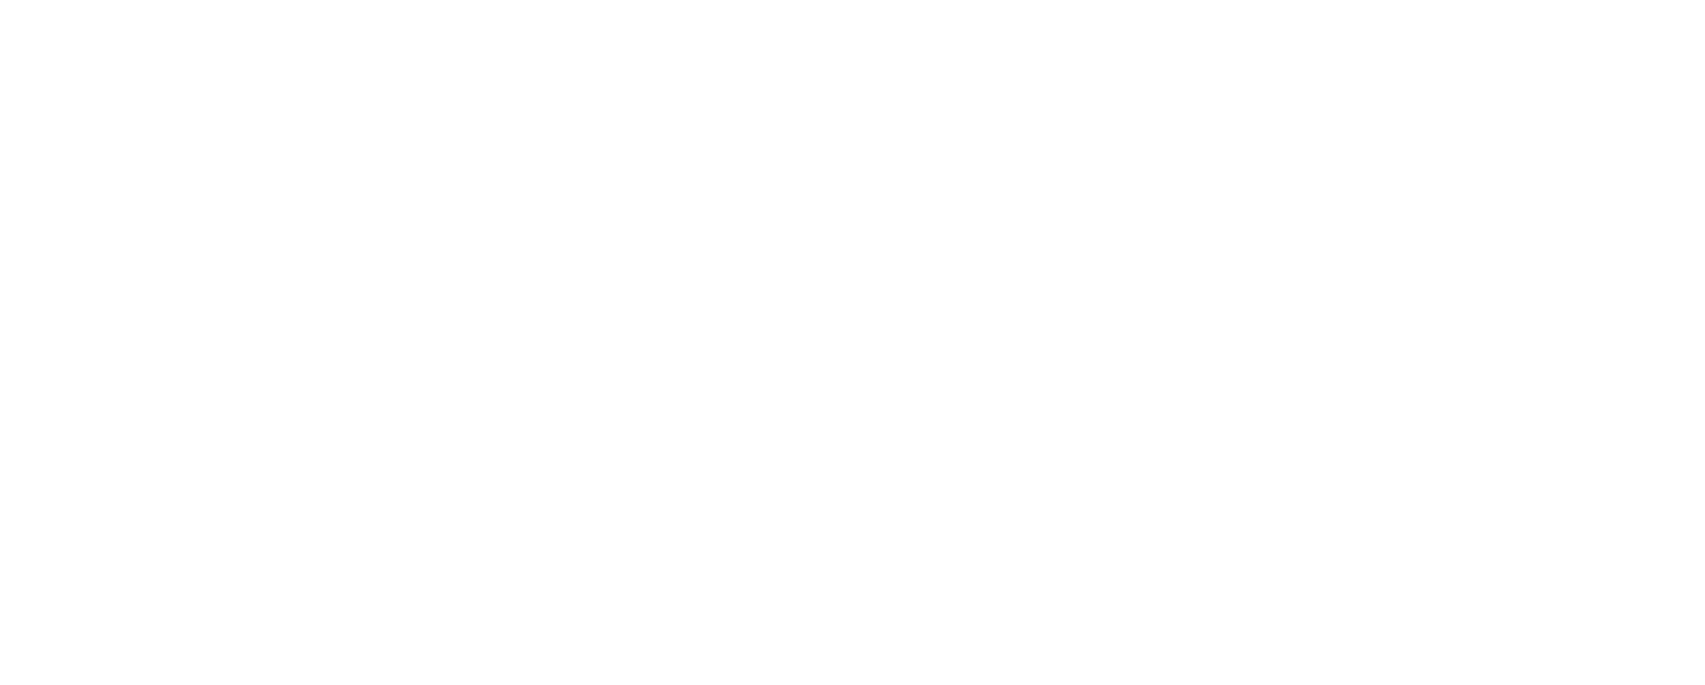 Logo ·ispalis· blanc